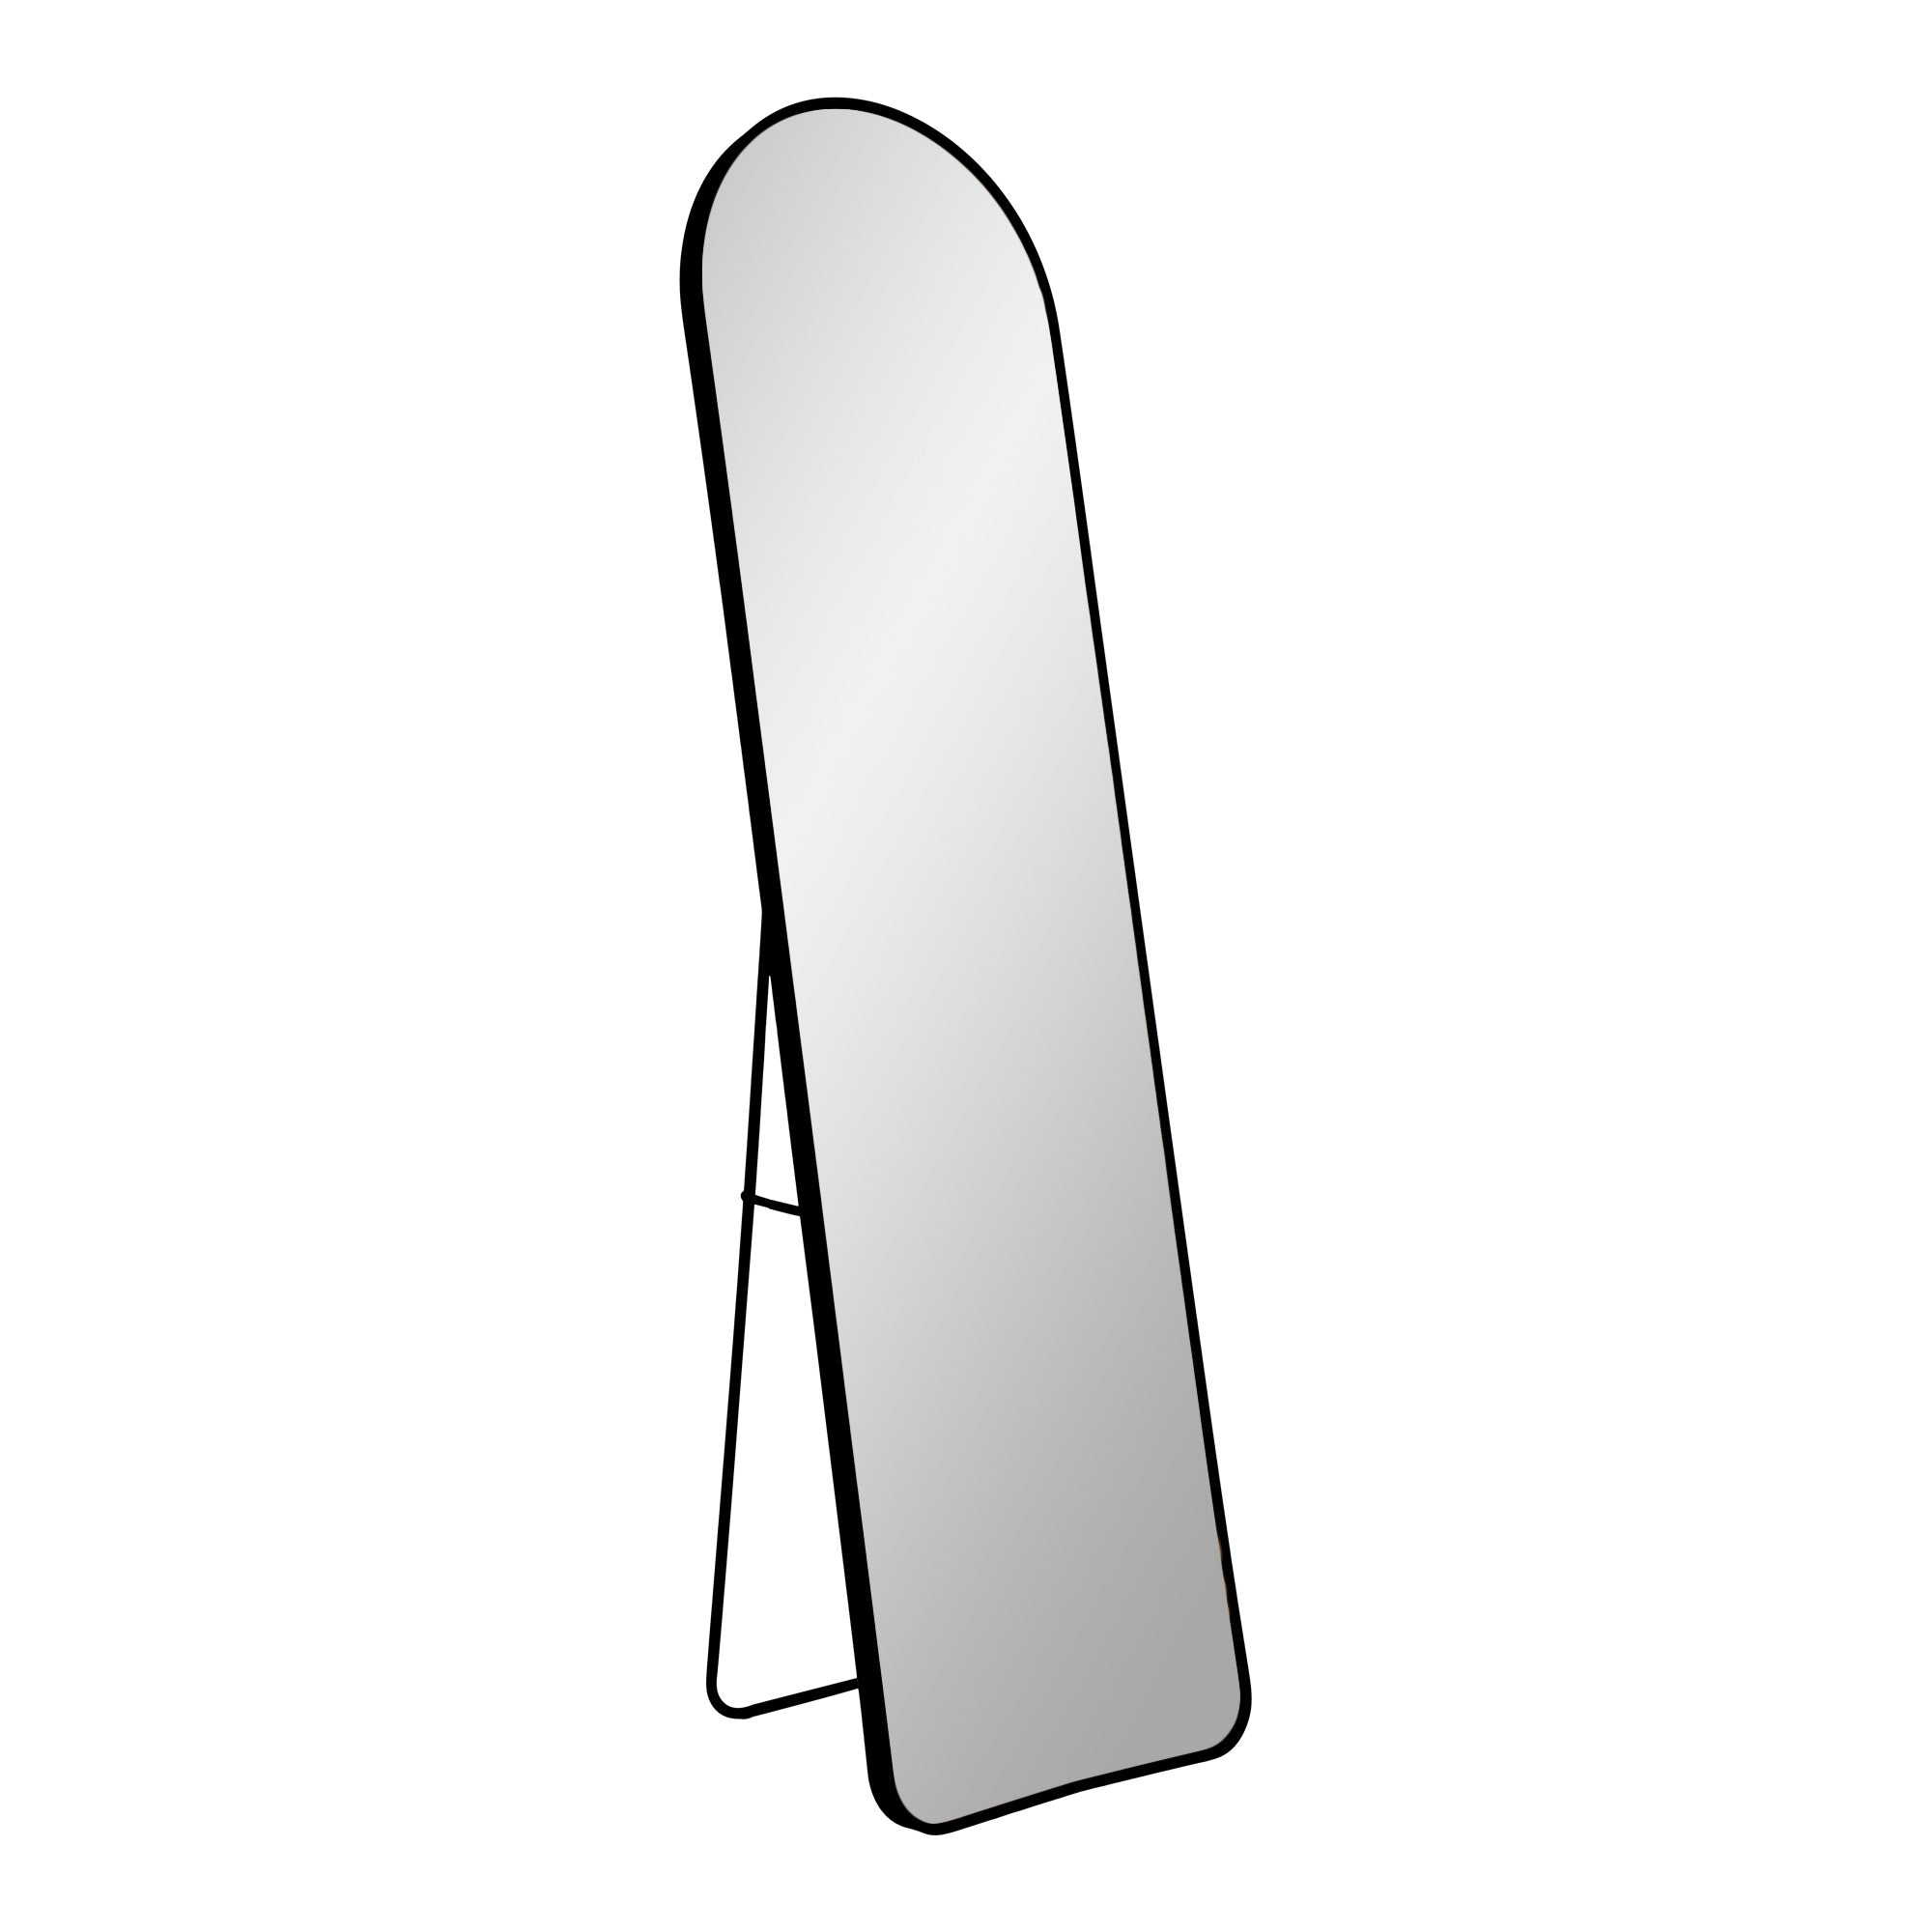 #2 - Madrid Spejl - Spejl i aluminium, sort, 40x150 cm